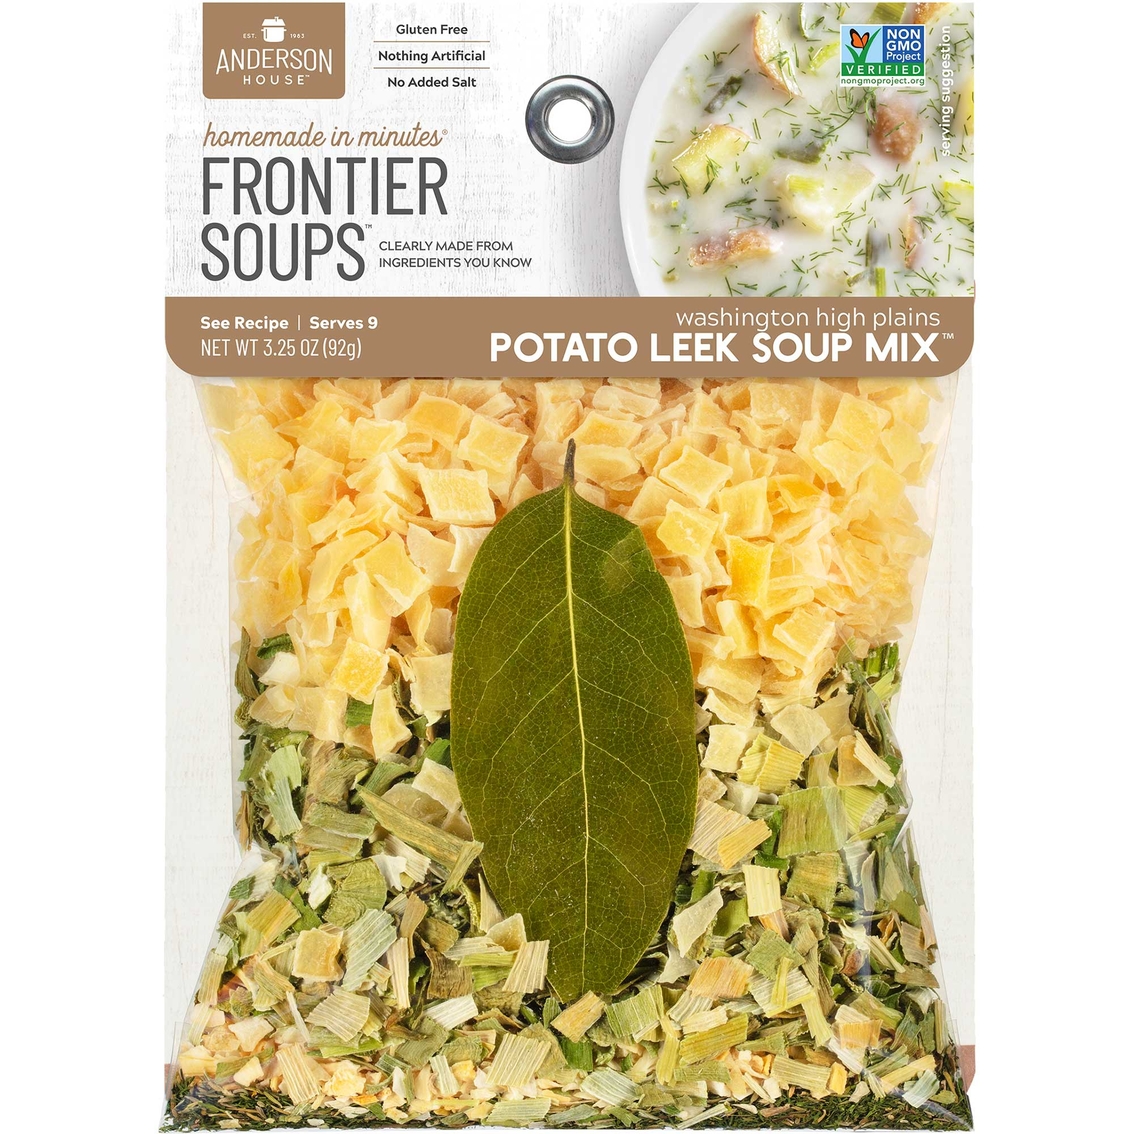 Frontier Soup Washington High Plains Potato Leek Soup Mix 8 bags